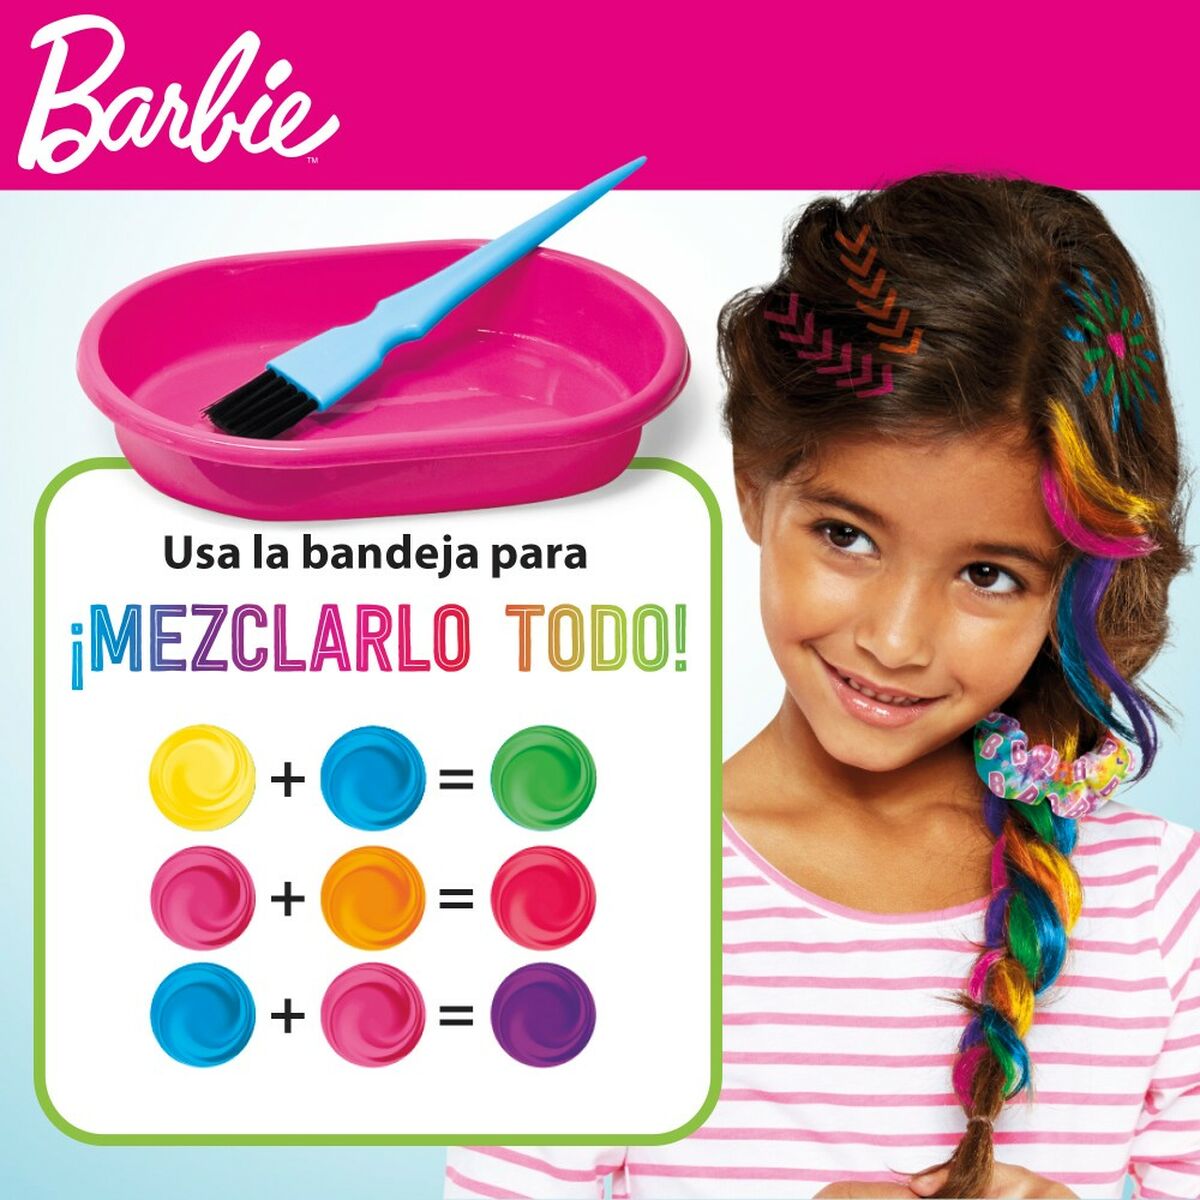 Assortiment pour cheveux Barbie Rainbow Tie 15,5 x 10,5 x 2,5 cm Cheveux avec Mèches Multicouleur